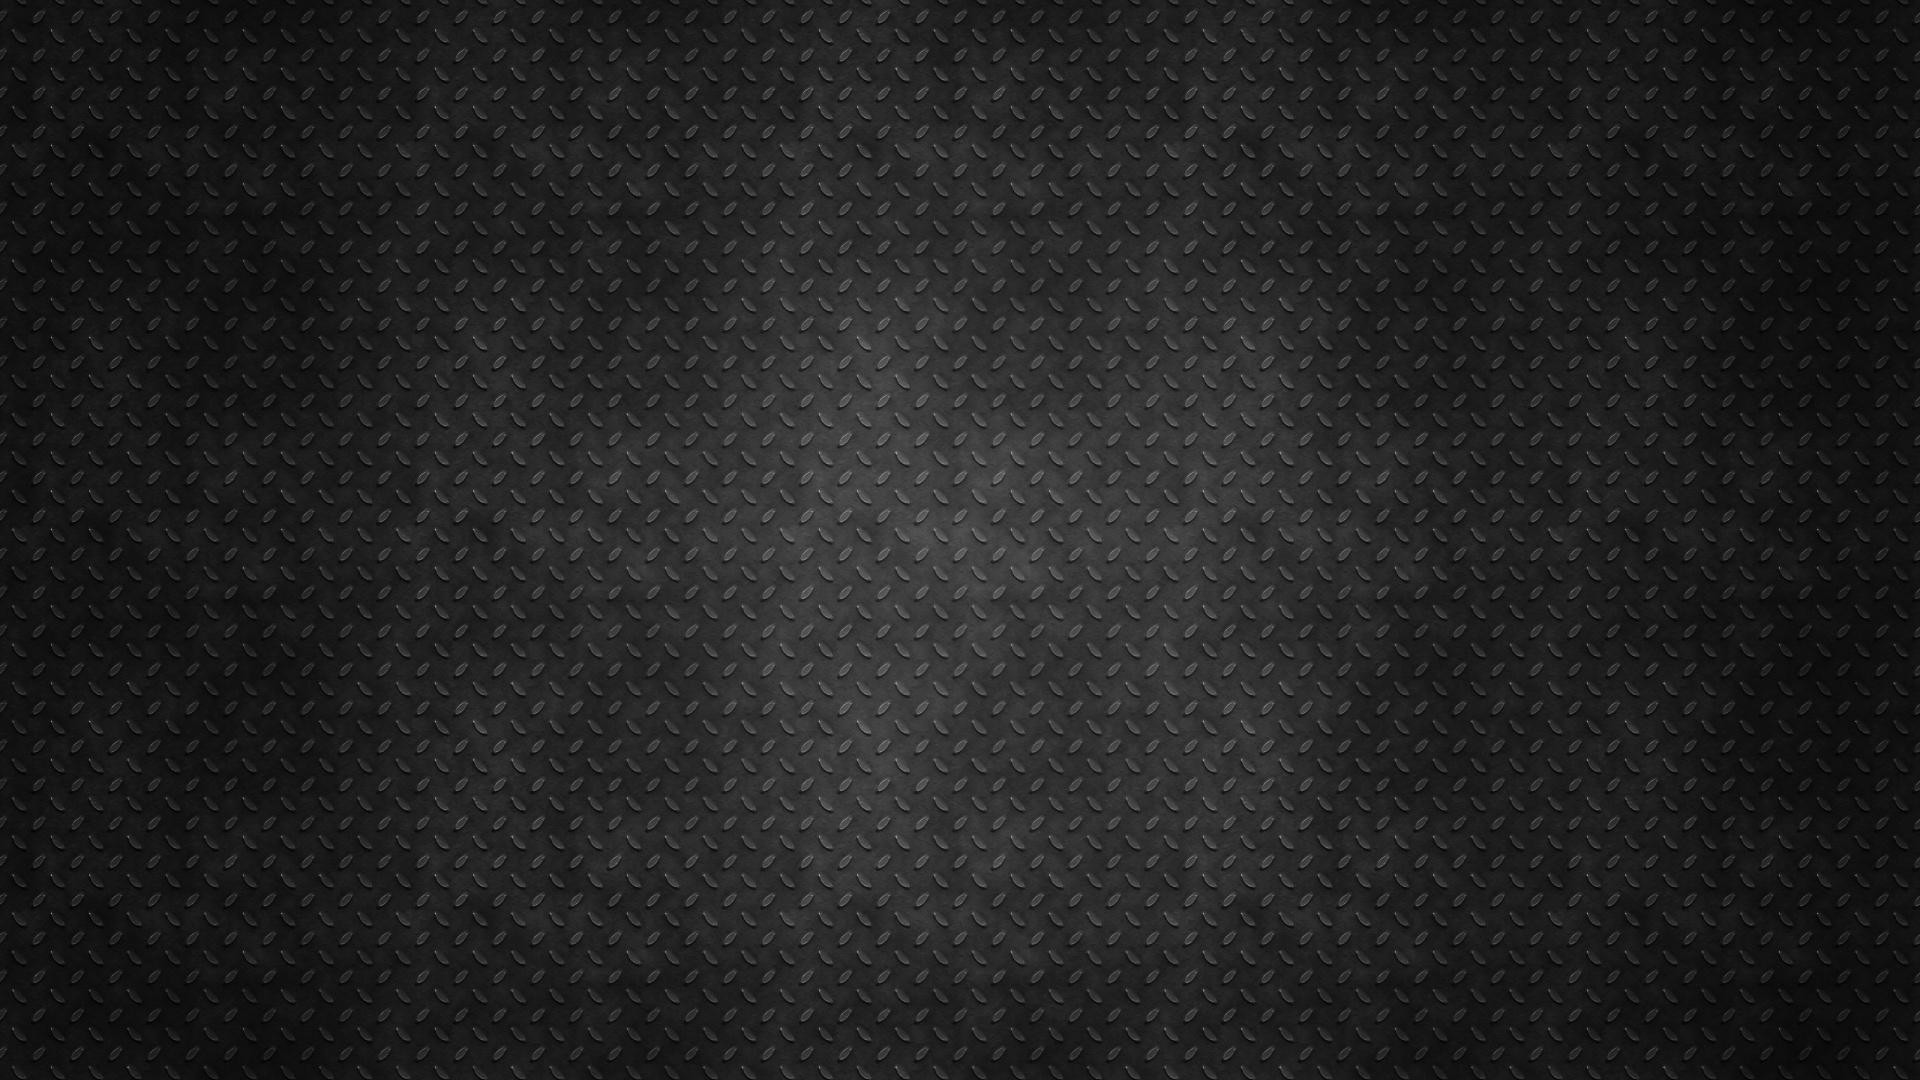 1920x1080 Black Wallpapers 1080p Wallpaper Cave Pure Black Wallpaper